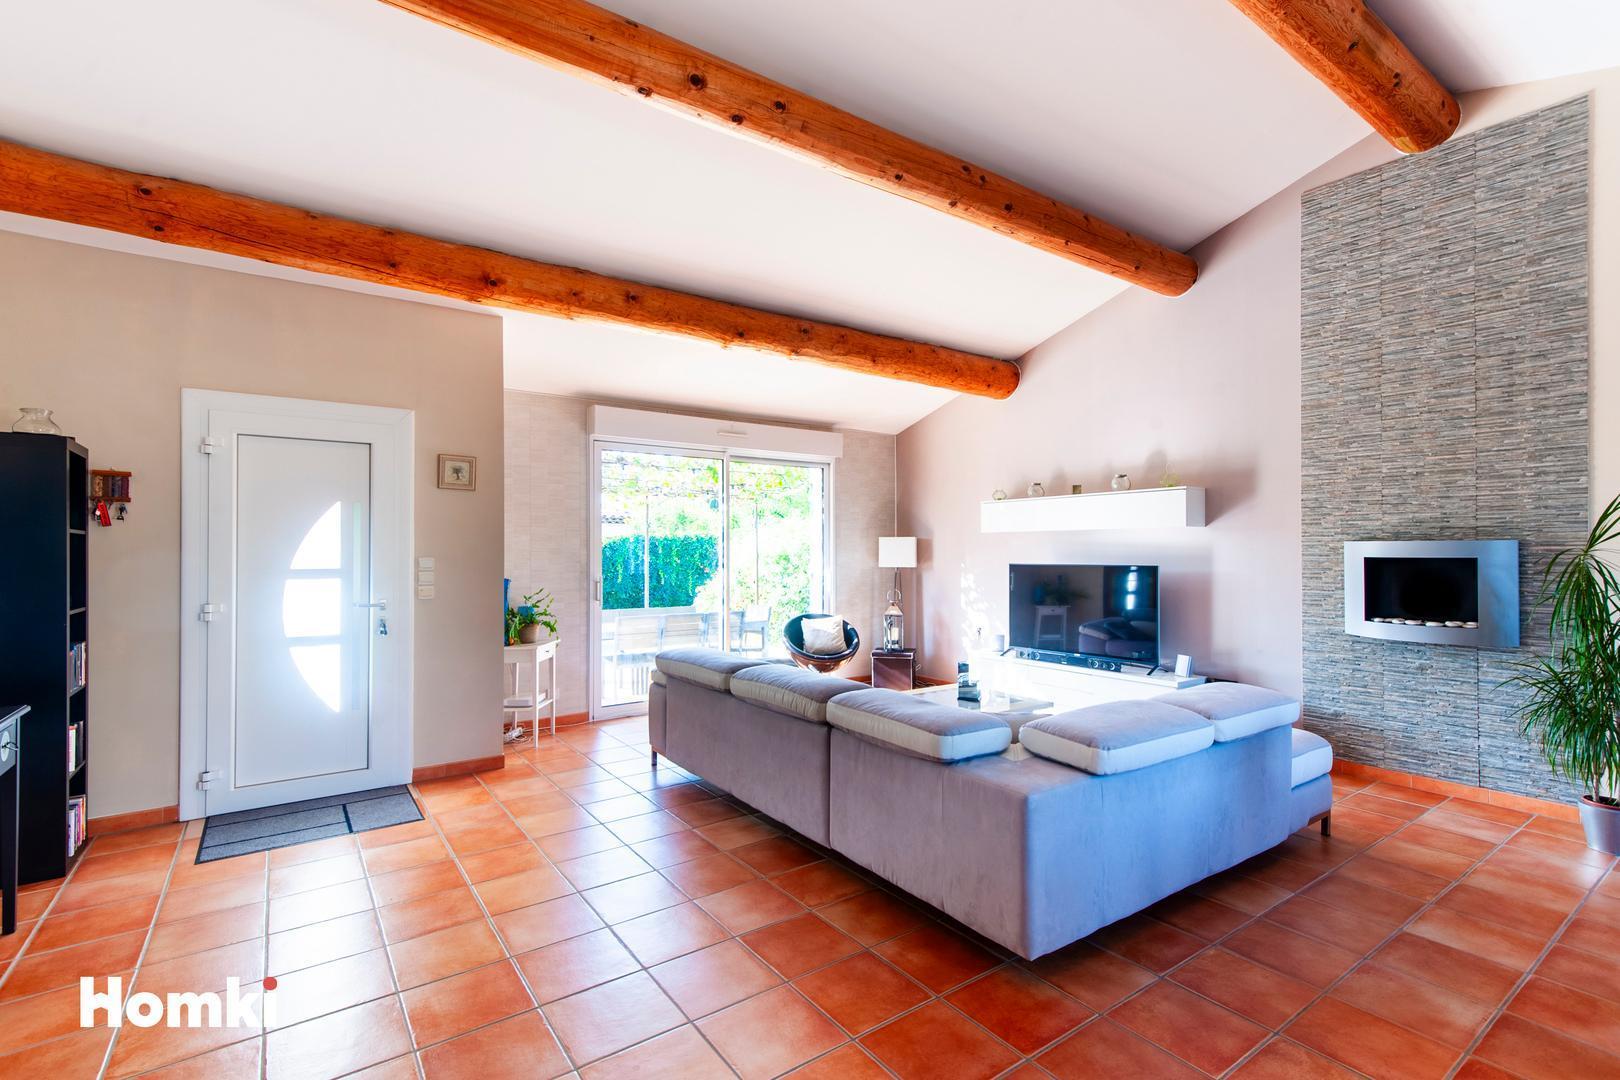 Homki - Vente Maison/villa  de 130.0 m² à Istres 13800